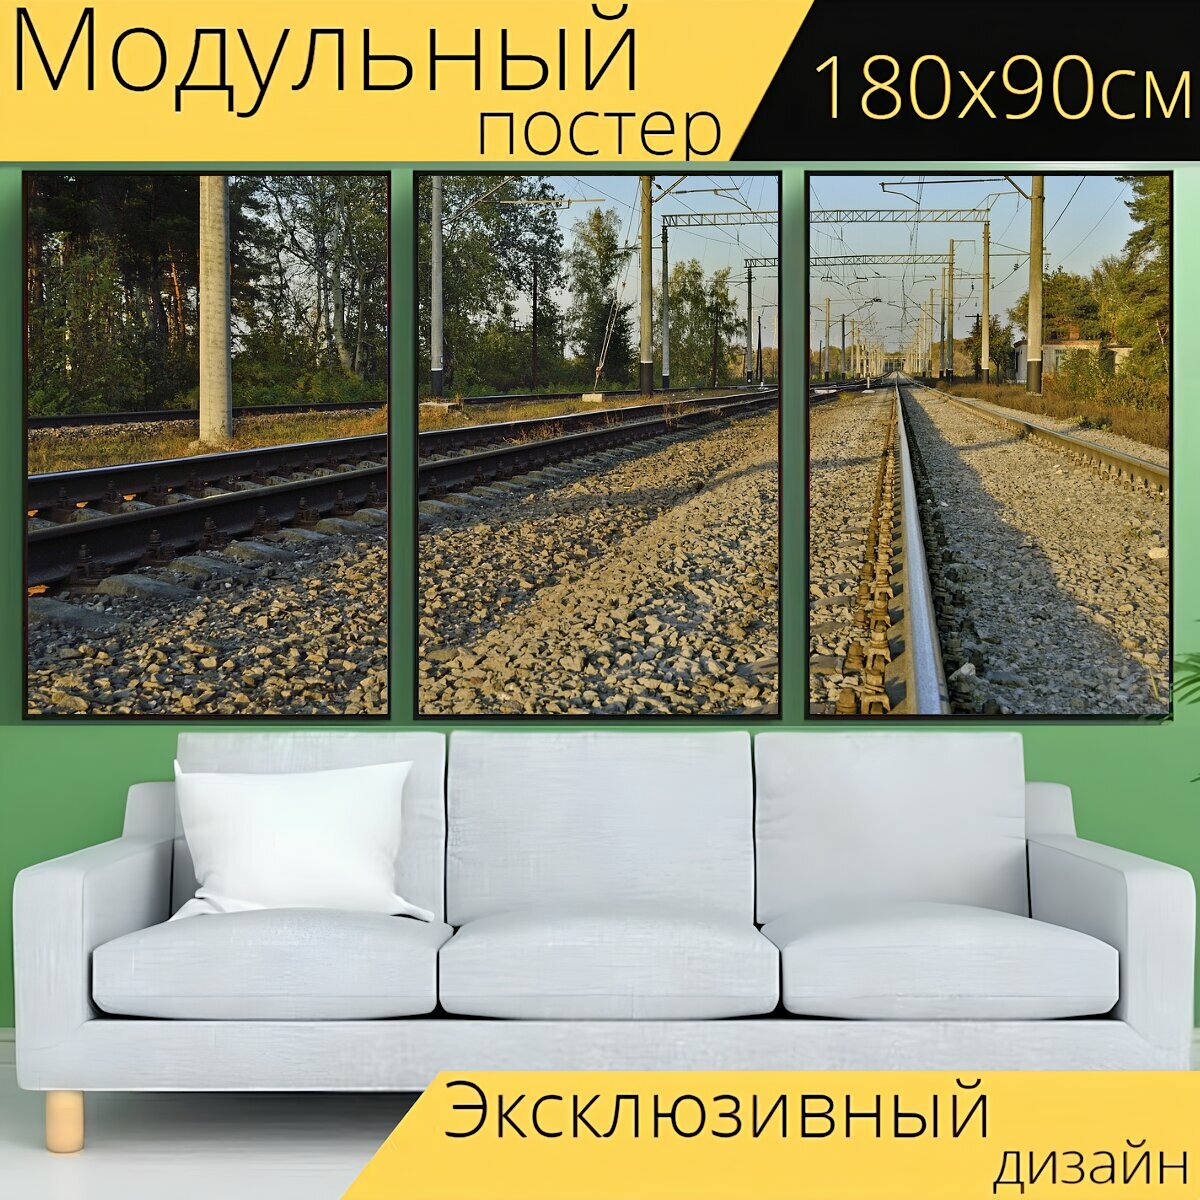 Модульный постер "Железная дорога, рельсы, поезд" 180 x 90 см. для интерьера